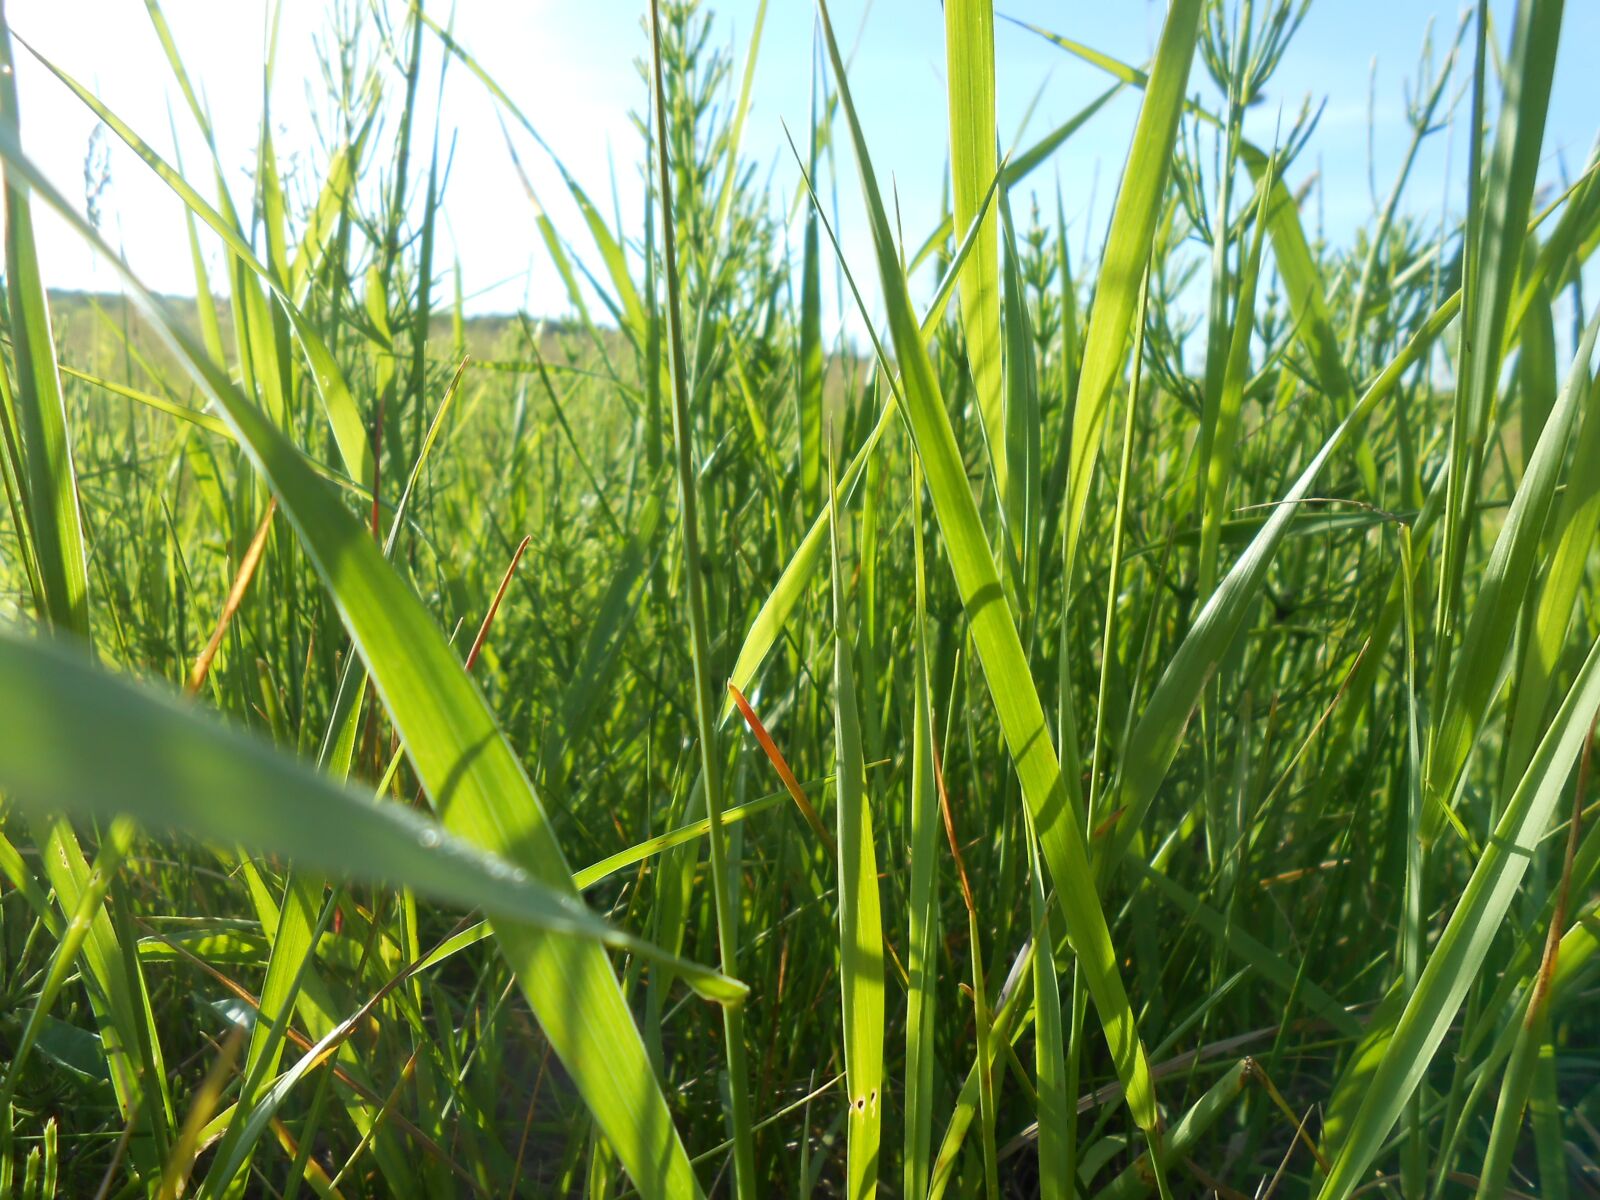 Nikon COOLPIX S2700 sample photo. Grass, summer, green grass photography